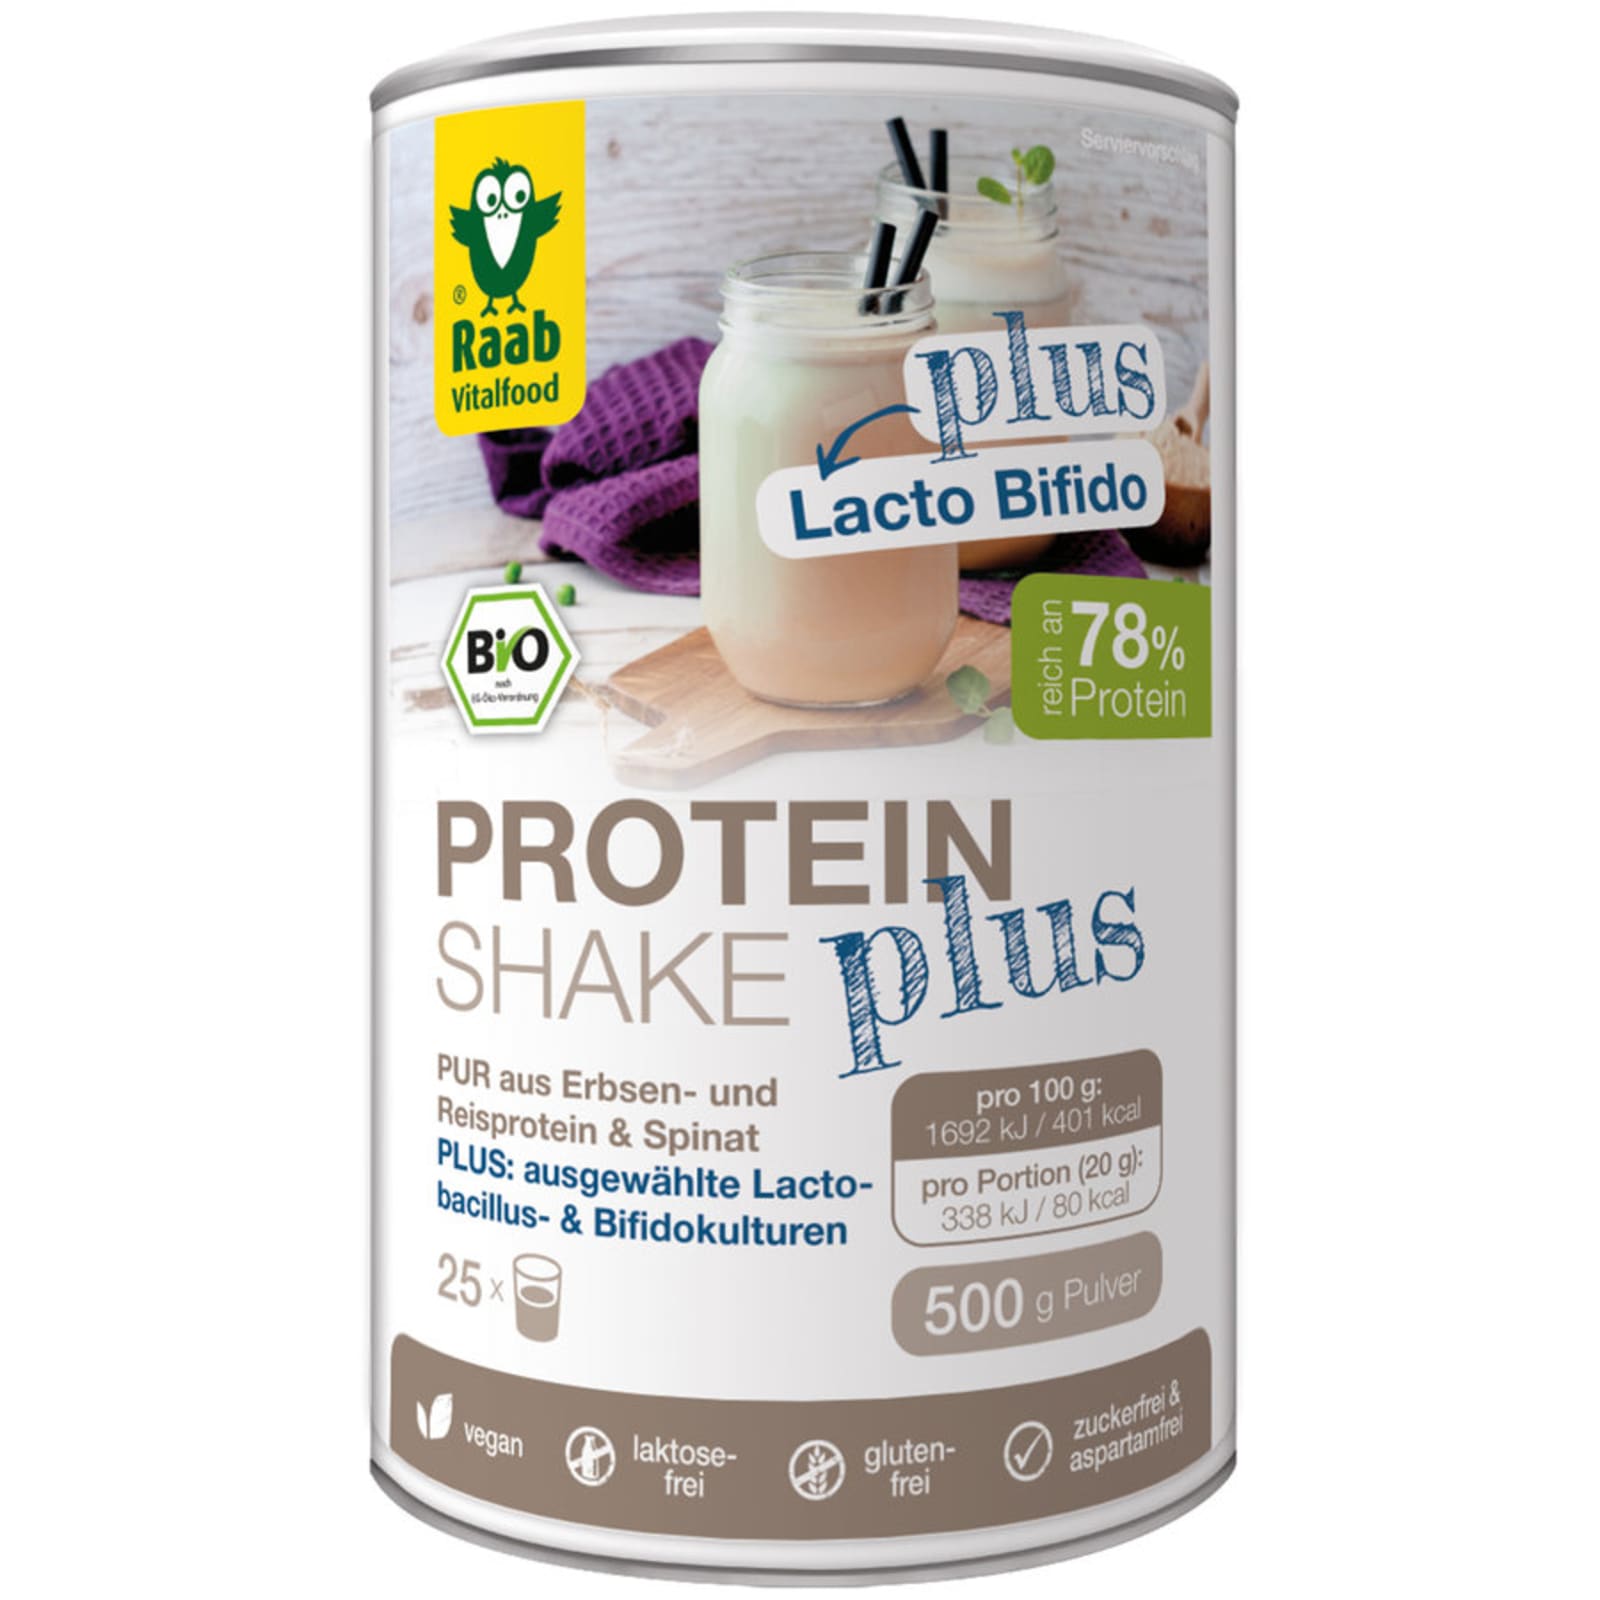 Herenhuis werkloosheid Mam Bio Protein Shake Pur Plus (500g) van Raab Vitalfood kopen | Bodylab Shop